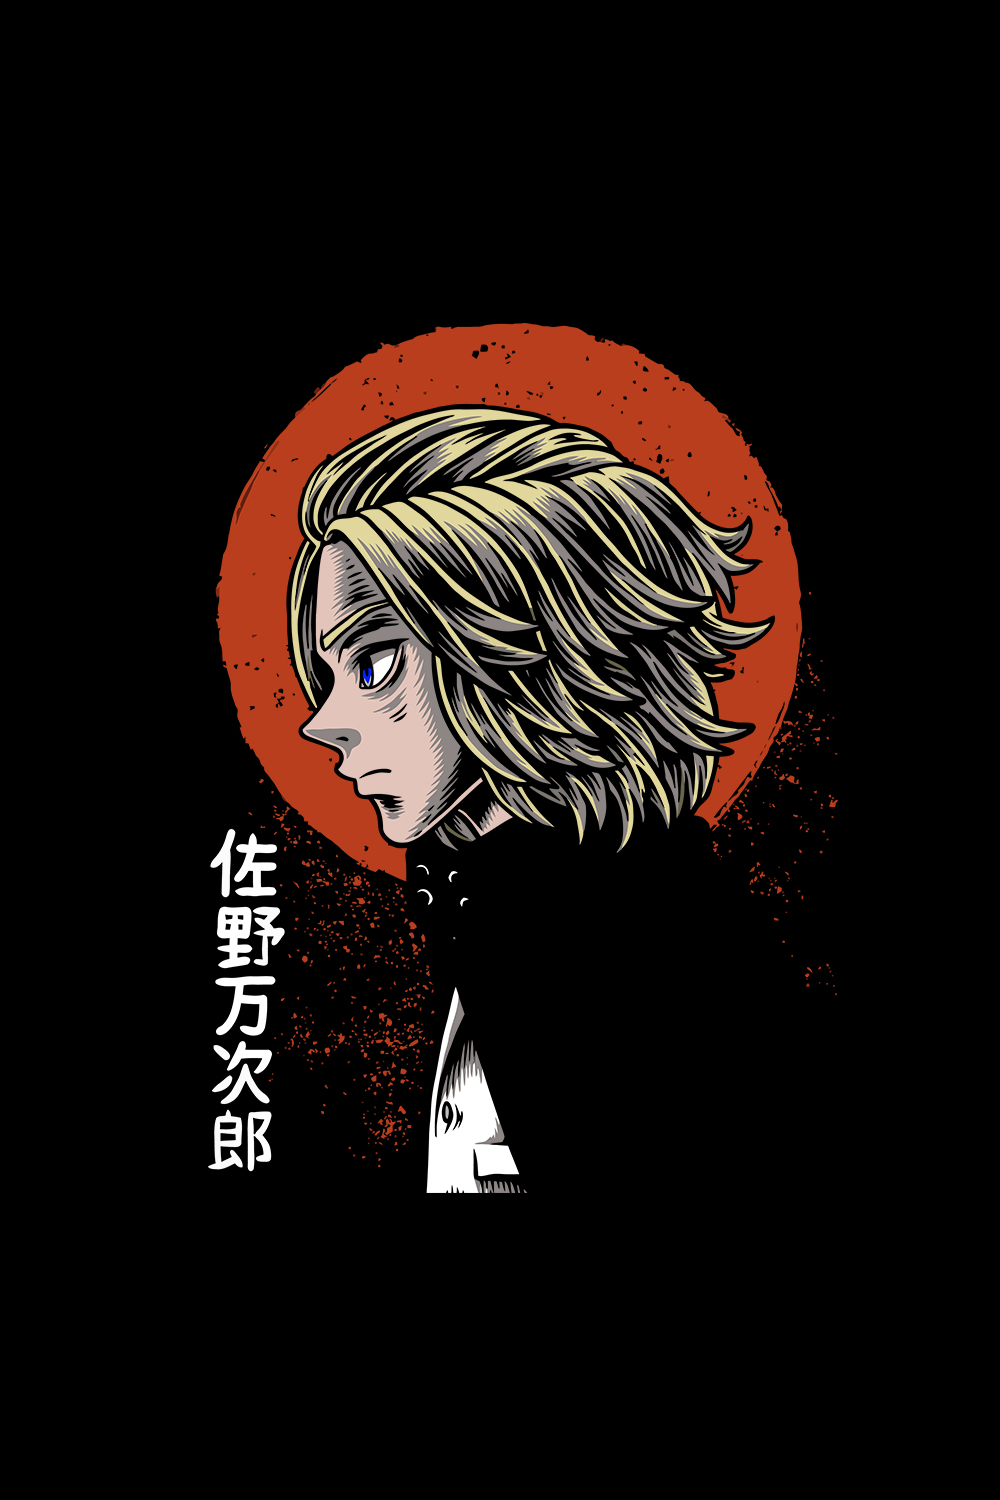 Tokyo Revengers Anime SVG pinterest preview image.